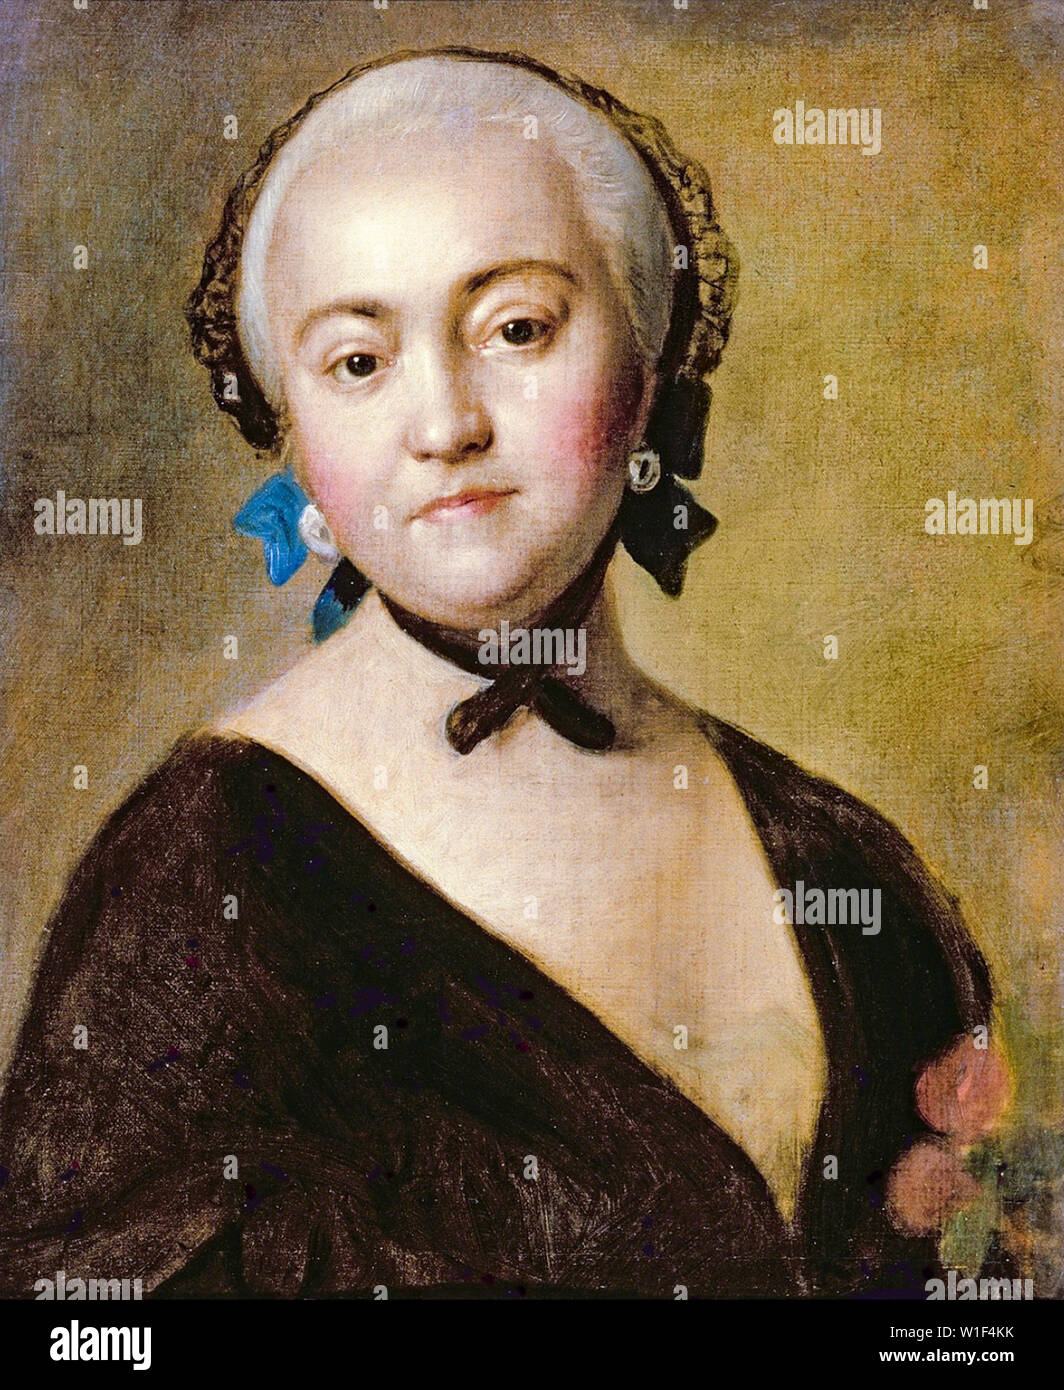 Pietro Rotari, l'Impératrice Elisabeth I de Russie, 1709-1762, dentelle noire mantilla, portrait peinture, 1756-1761 Banque D'Images